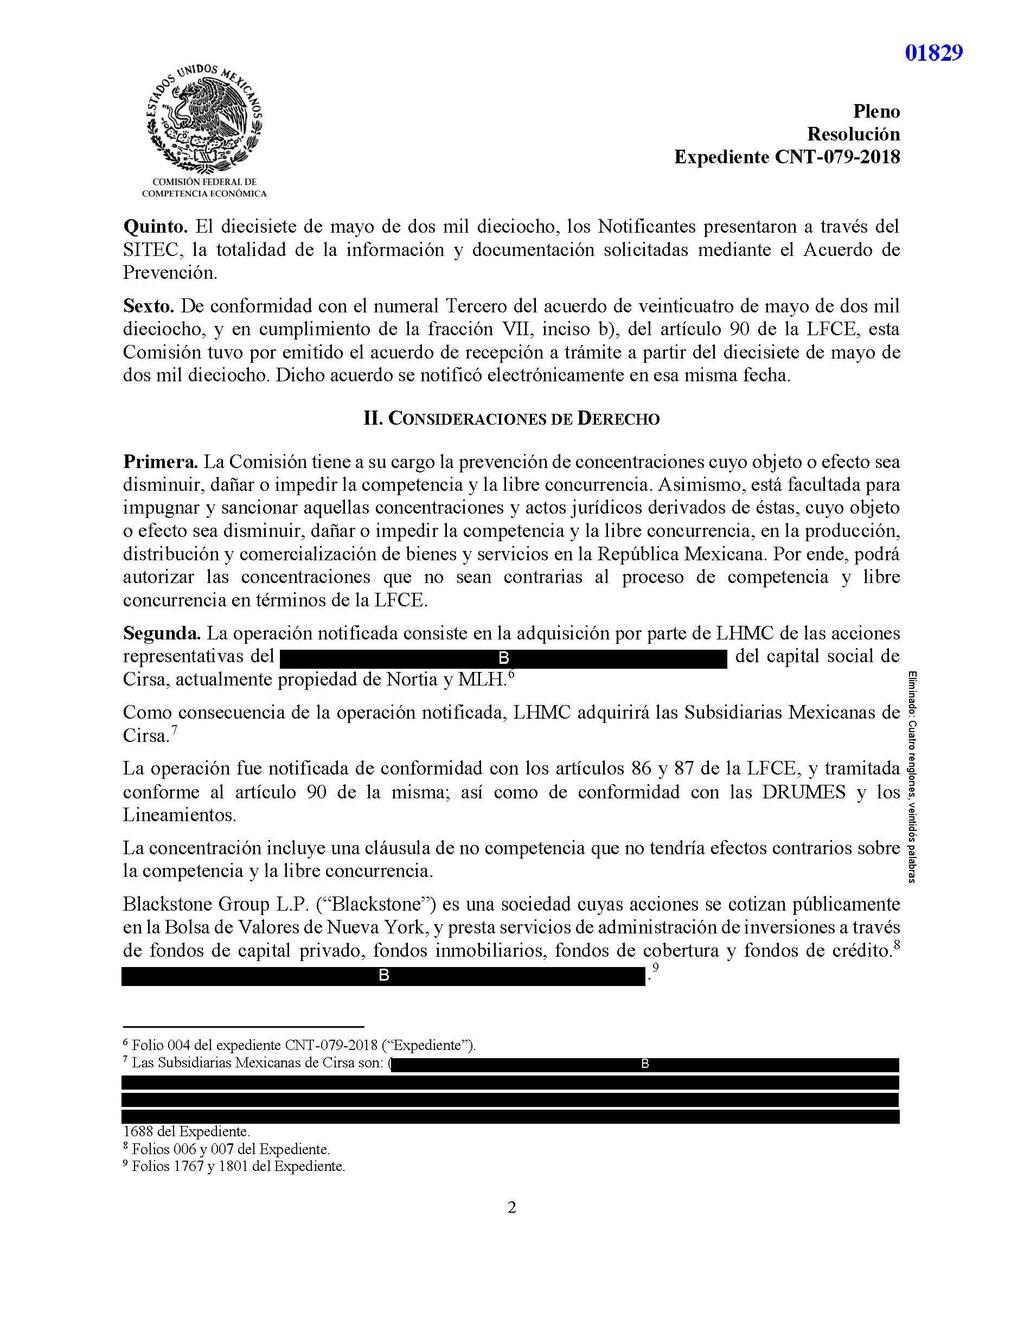 01829 Quinto. El diecisiete de mayo de dos mil dieciocho, los Notificantes presentaron a través del SITEC, la totalidad de la información y documentación solicitadas mediante el Acuerdo de Prevención.